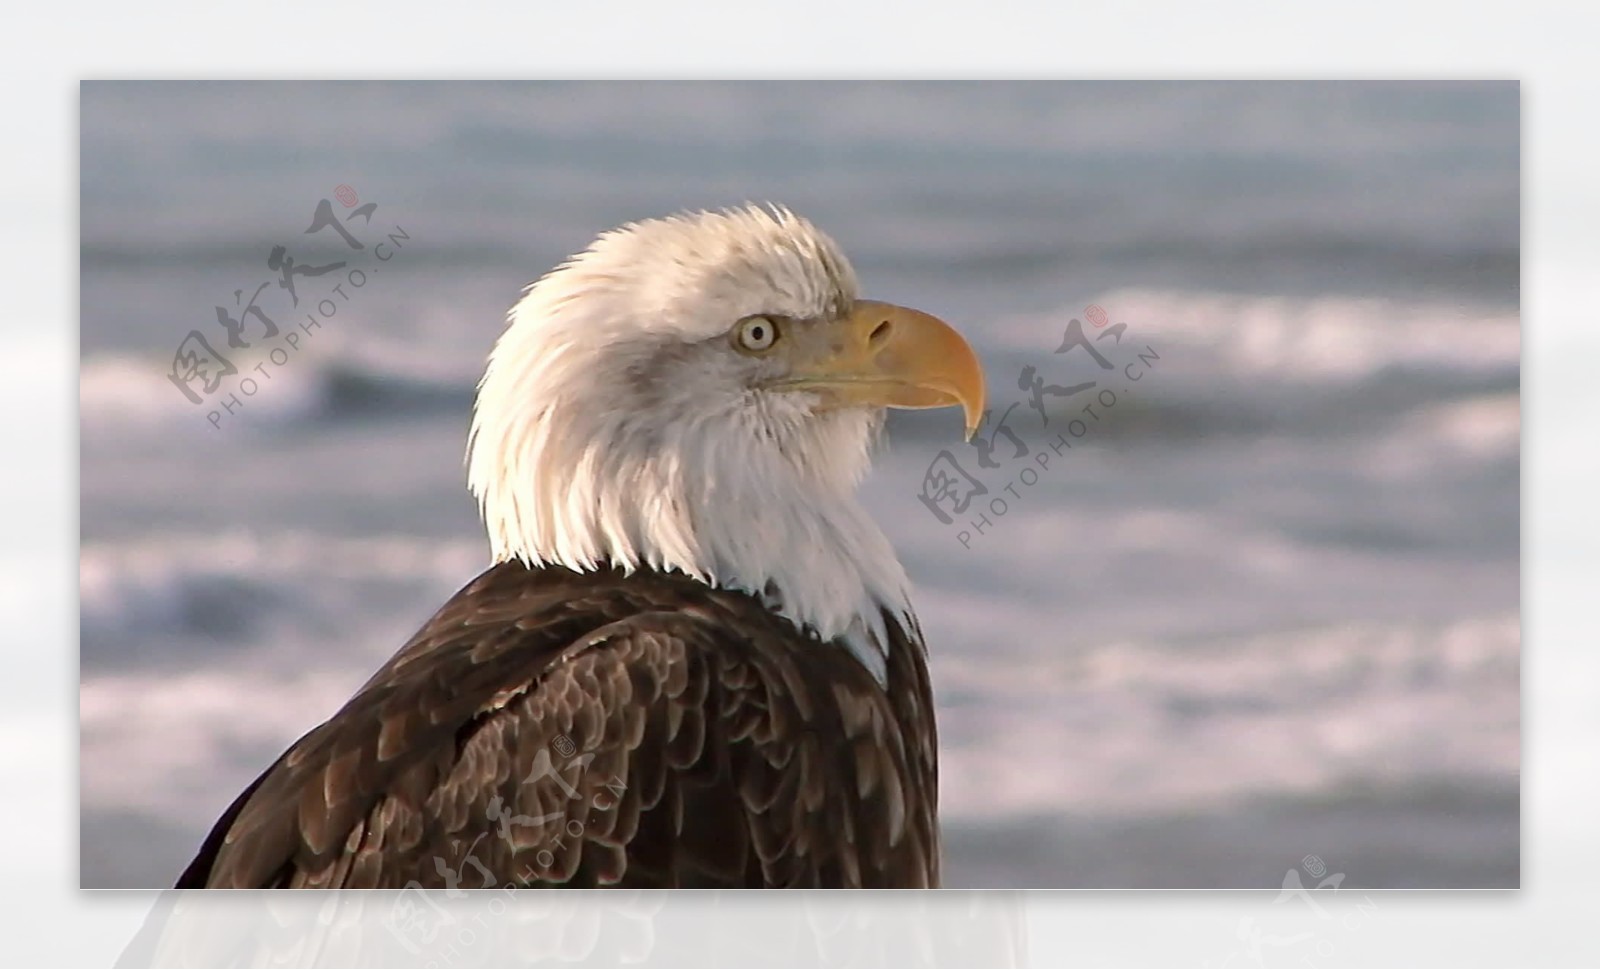 关闭背景中的股票视频画面与海的秃头鹰视频免费下载